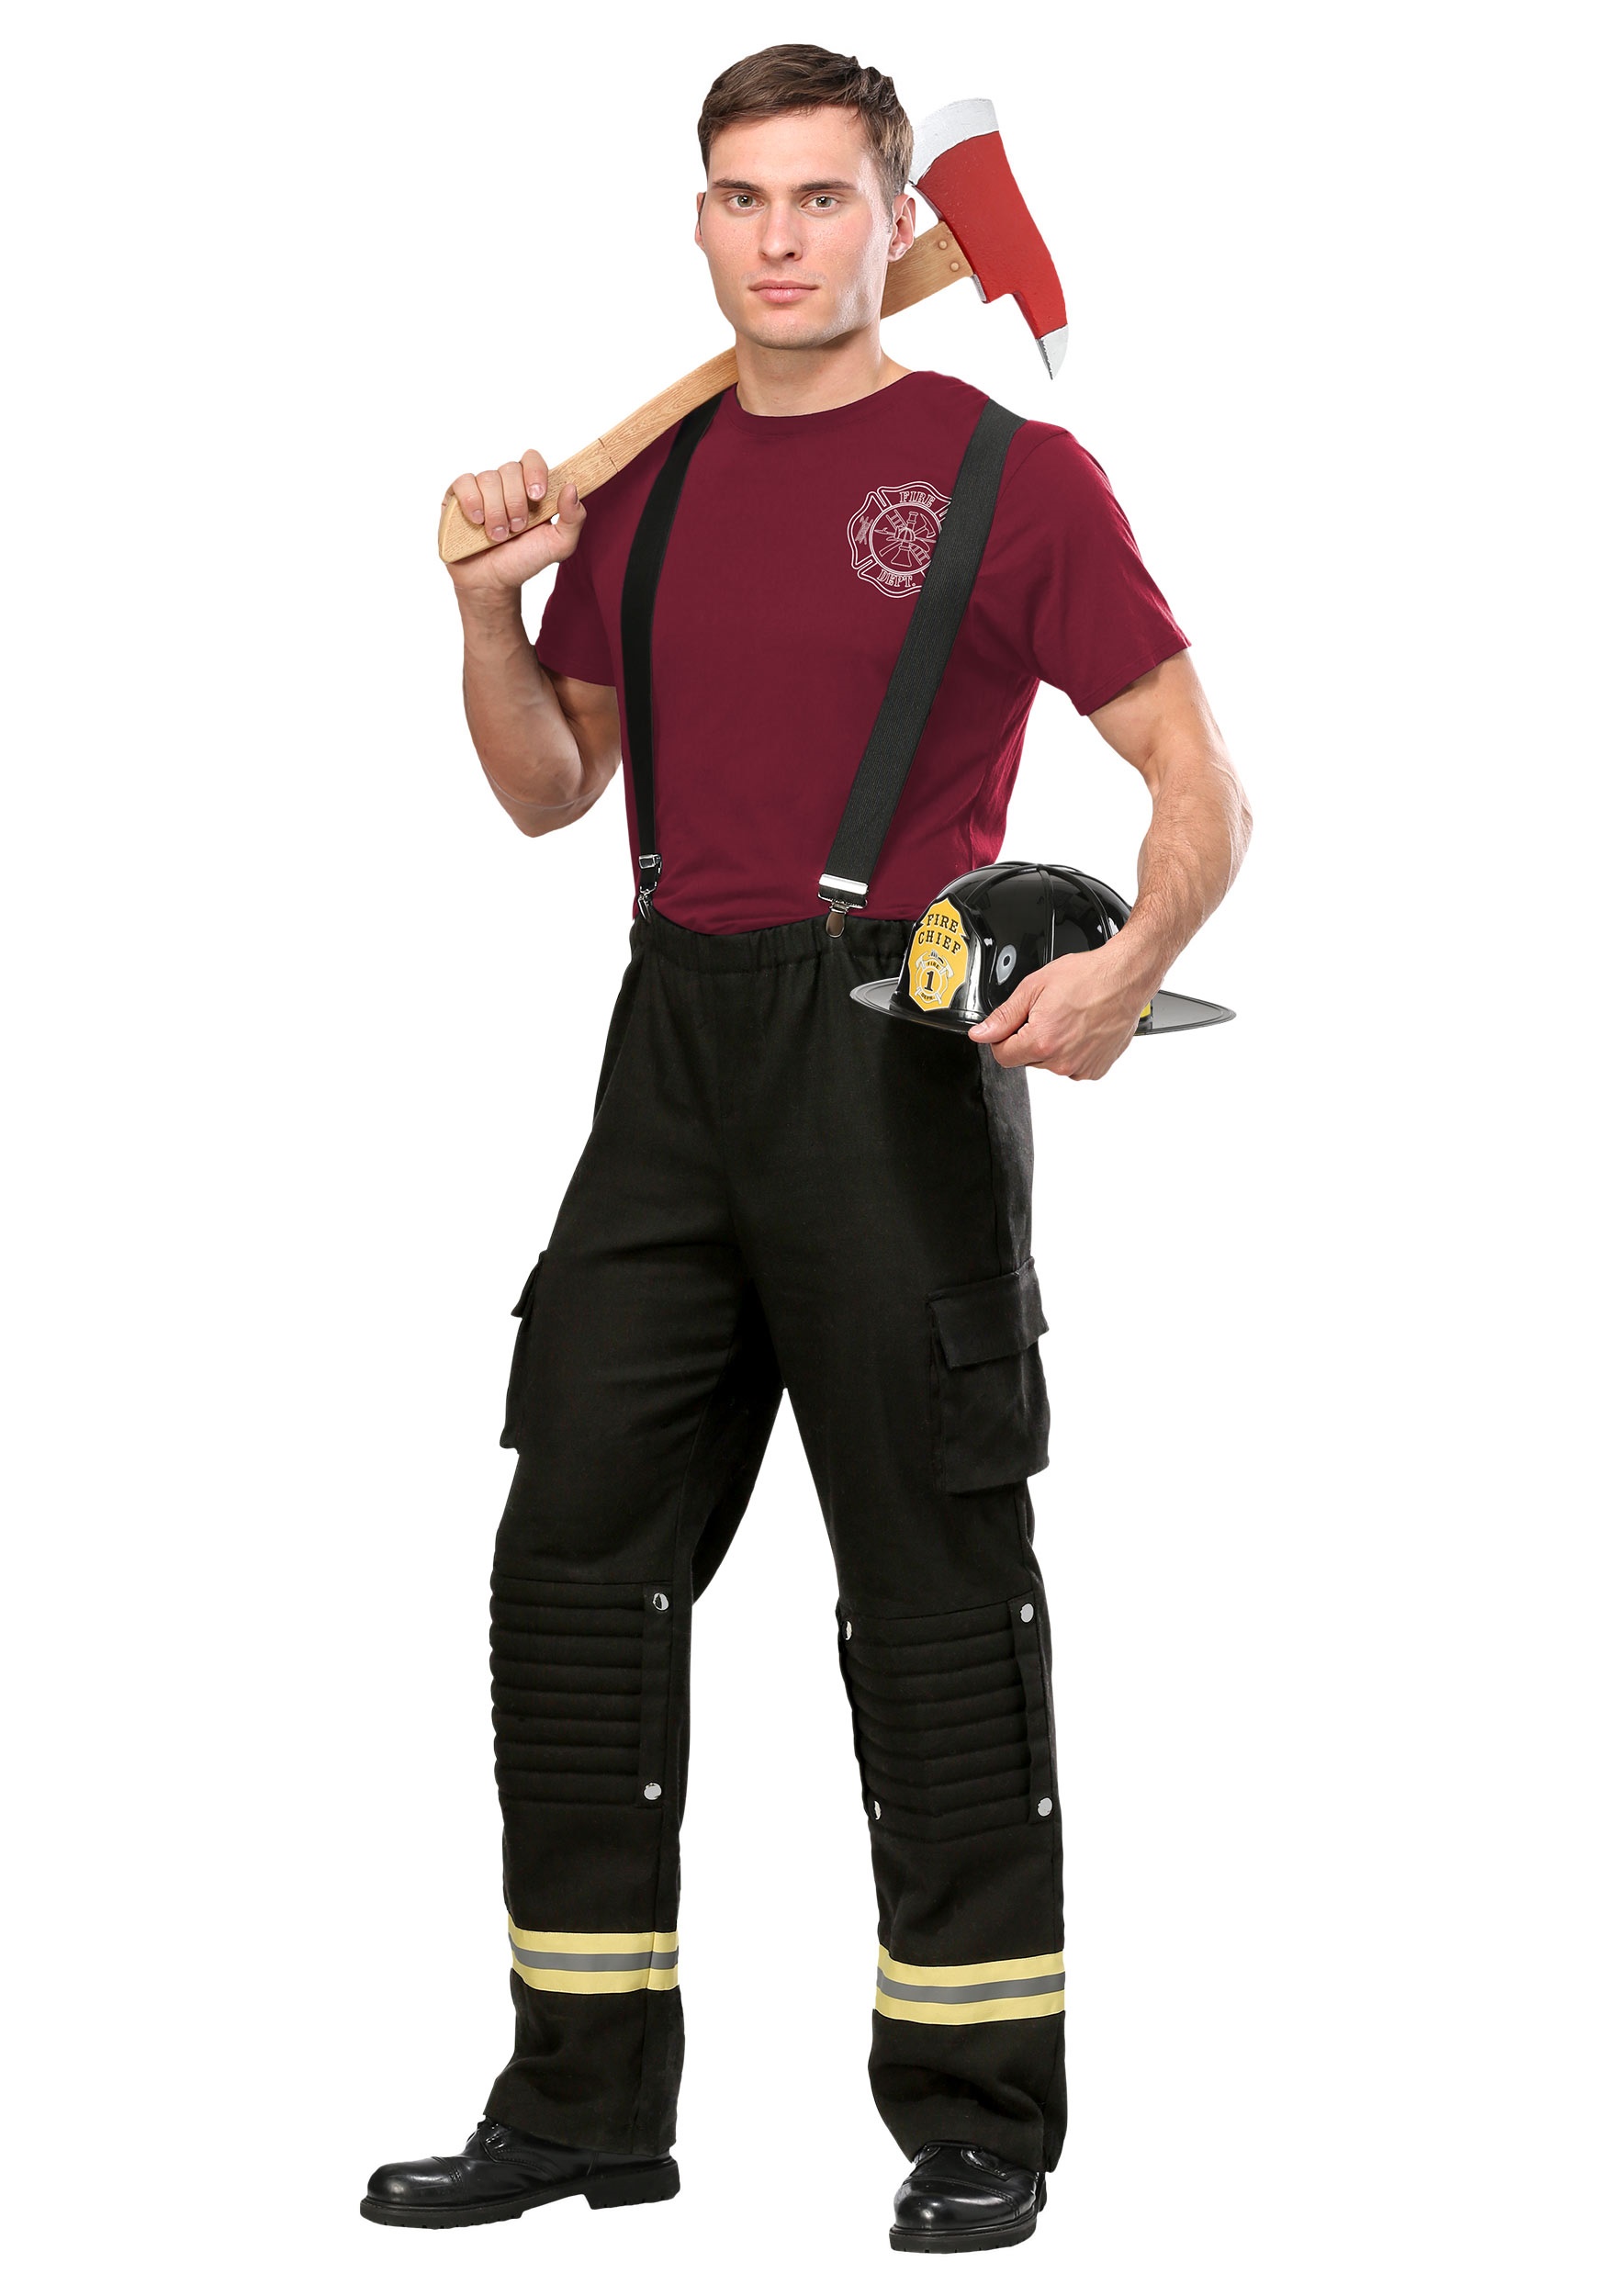 Fire Captain Plus Size Costume for Men 2X